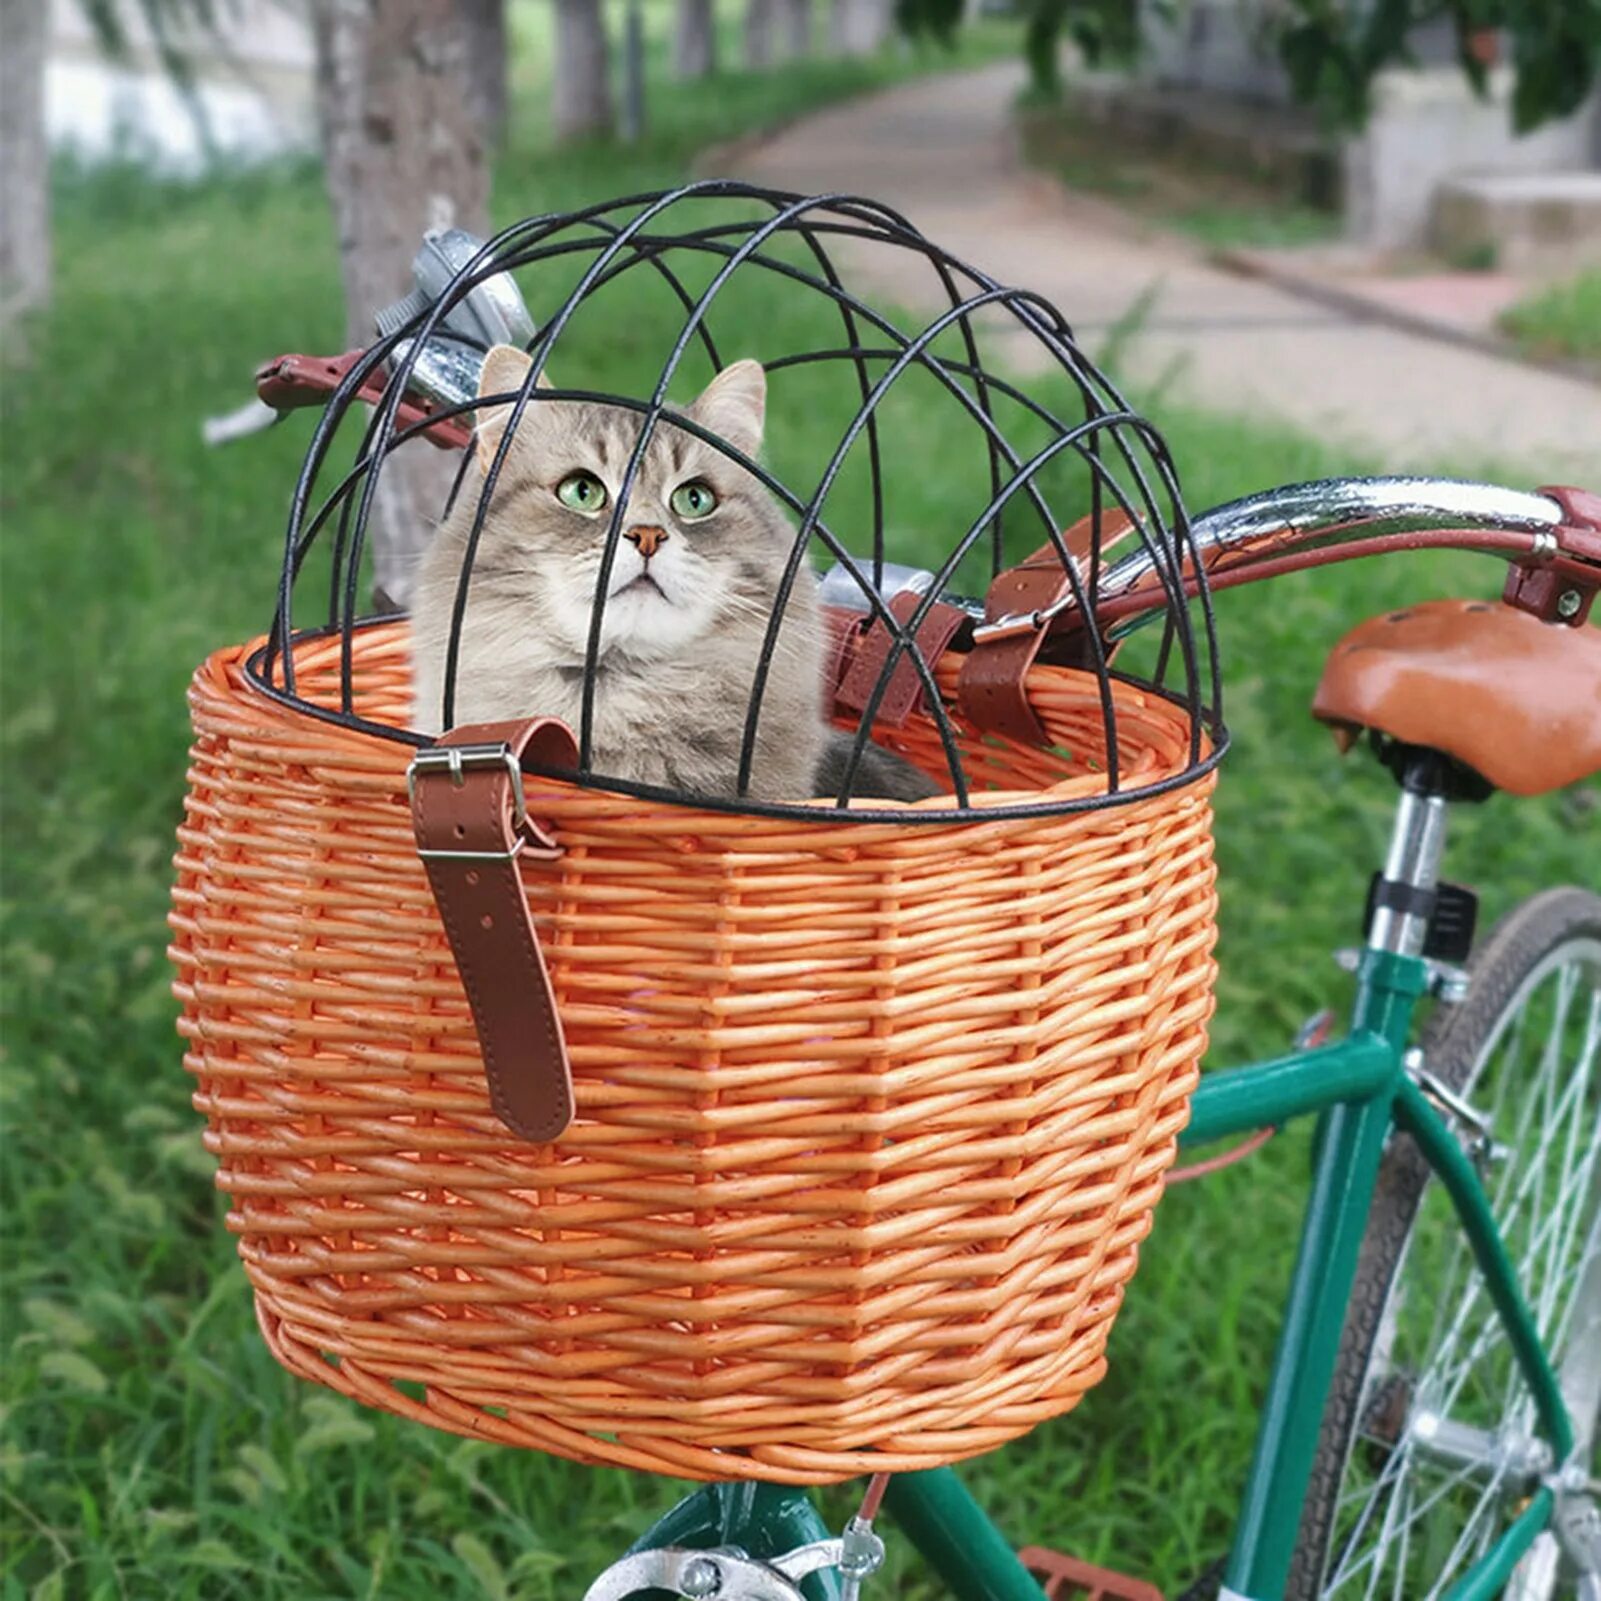 Cat bike. Велосипедная корзина для животных. Плетеная корзина для животных велосипед. Корзинка для собаки на велосипед. Корзинка для кошки на велосипед.